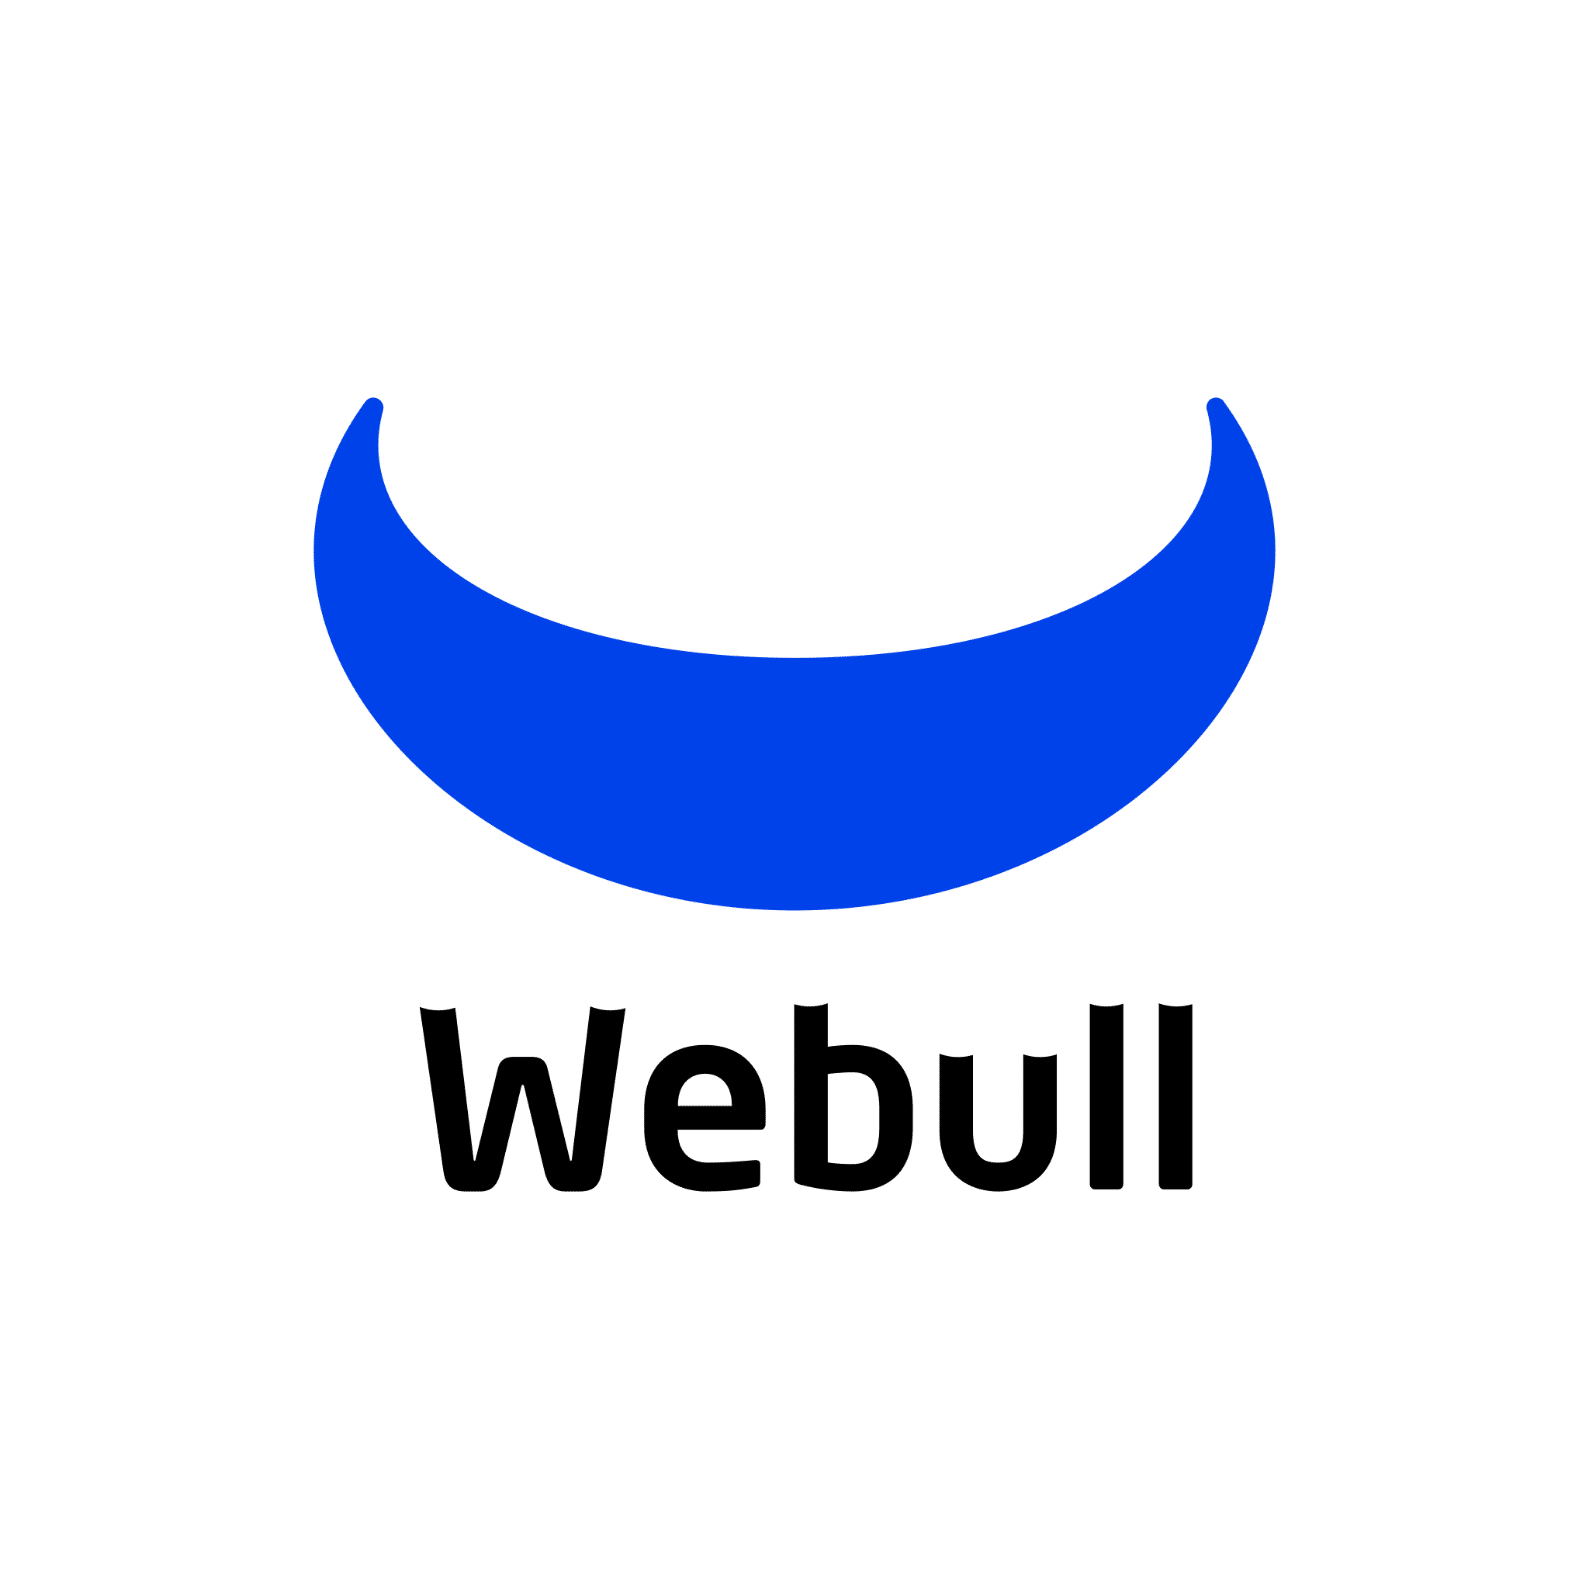 Webull